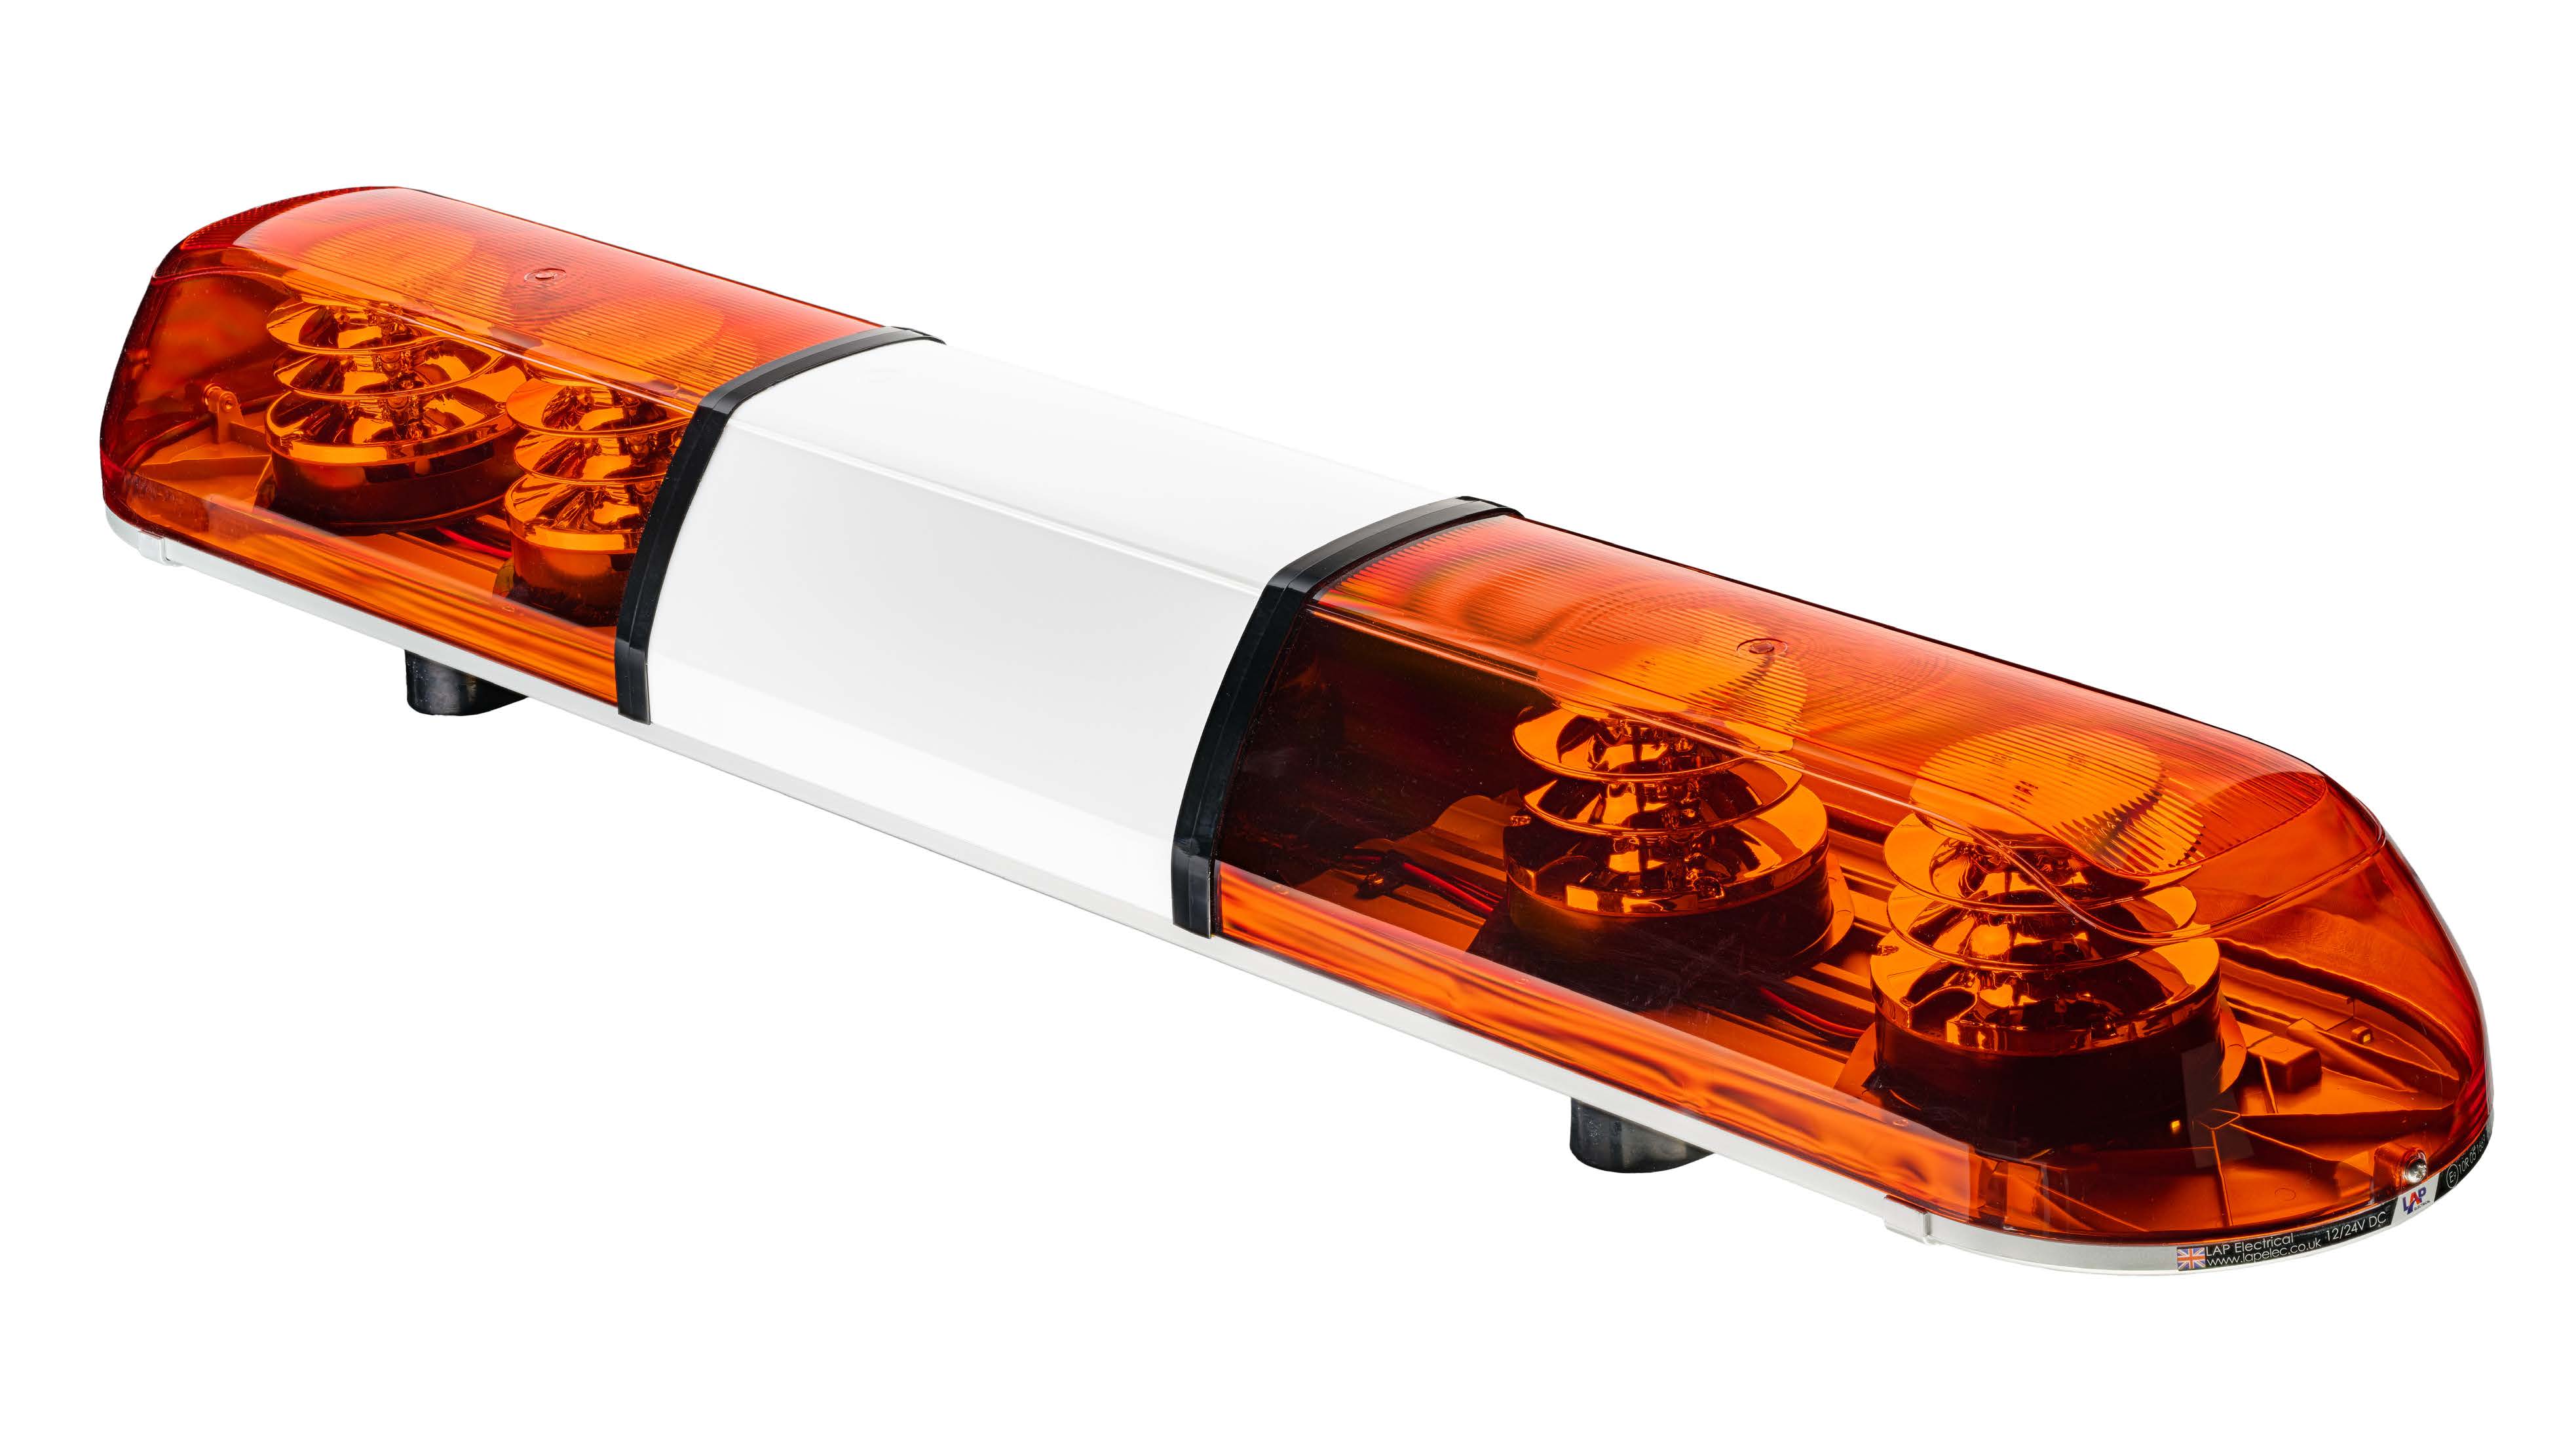 Trident LED Warnbalken | Lichtbalken | 872mm